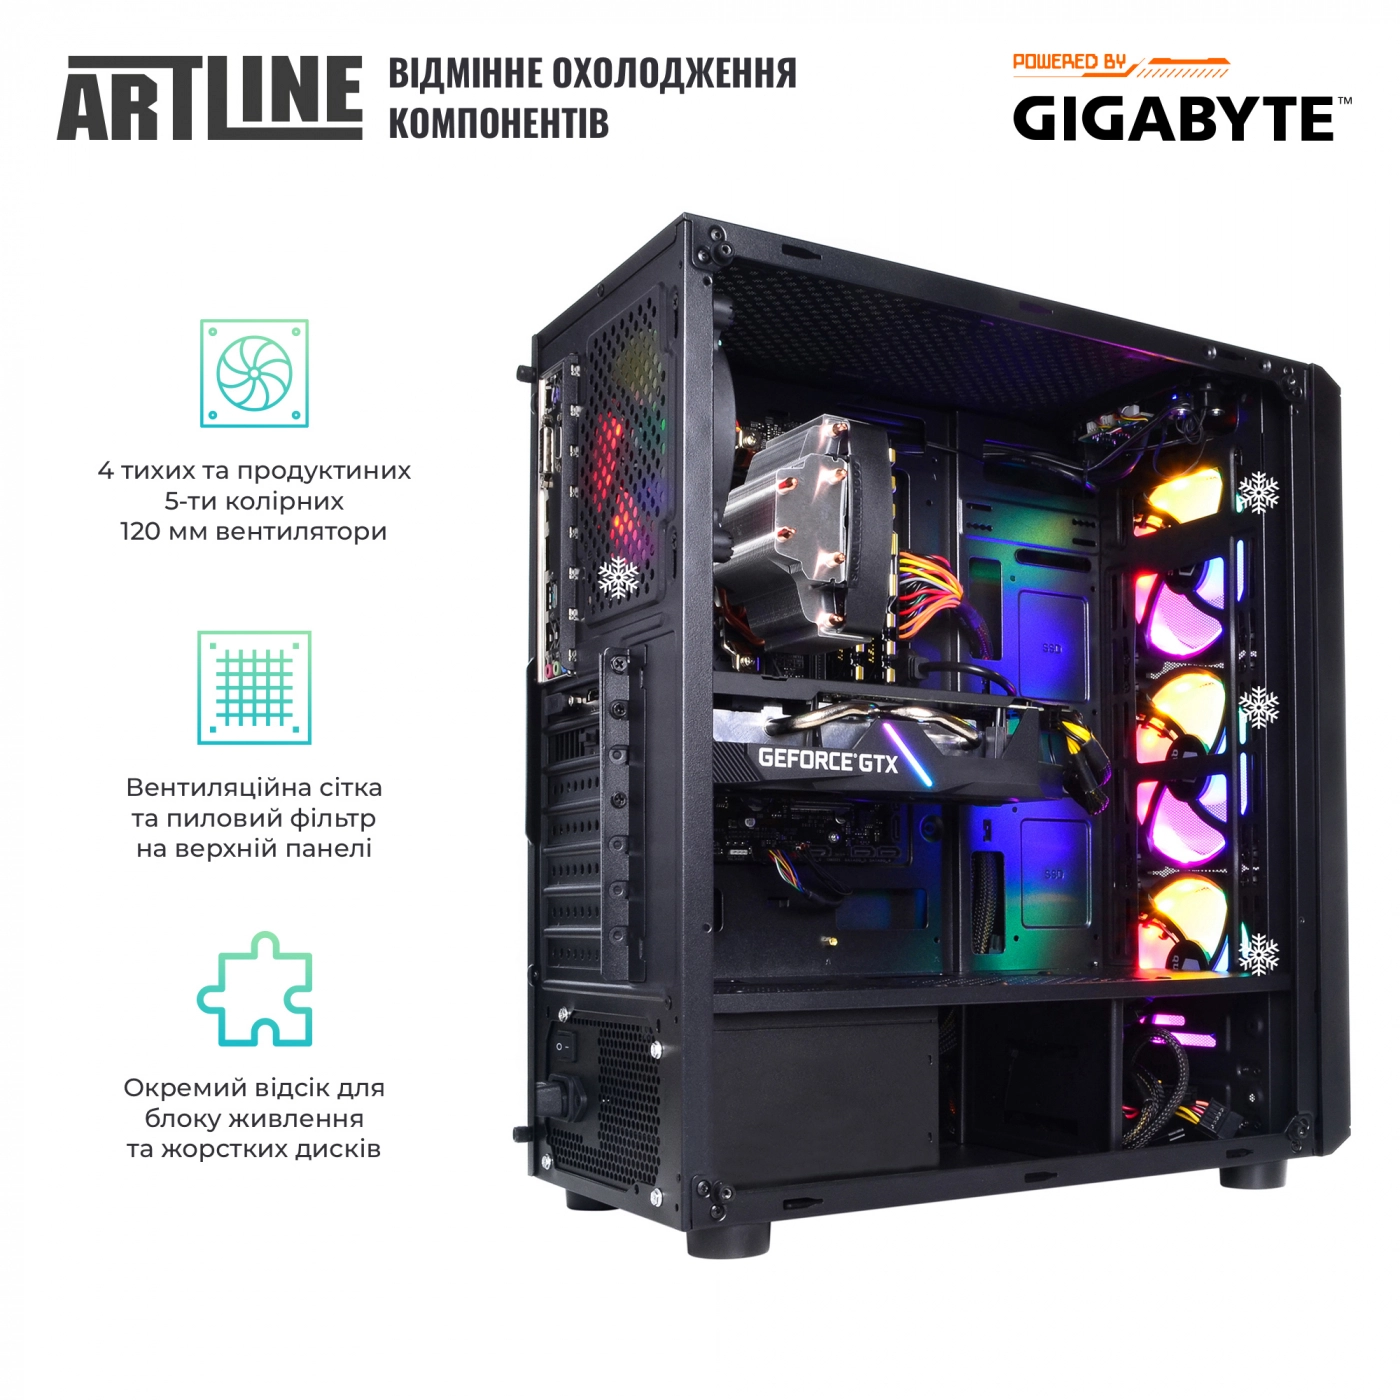 Купить Компьютер ARTLINE Gaming X51v07 - фото 5